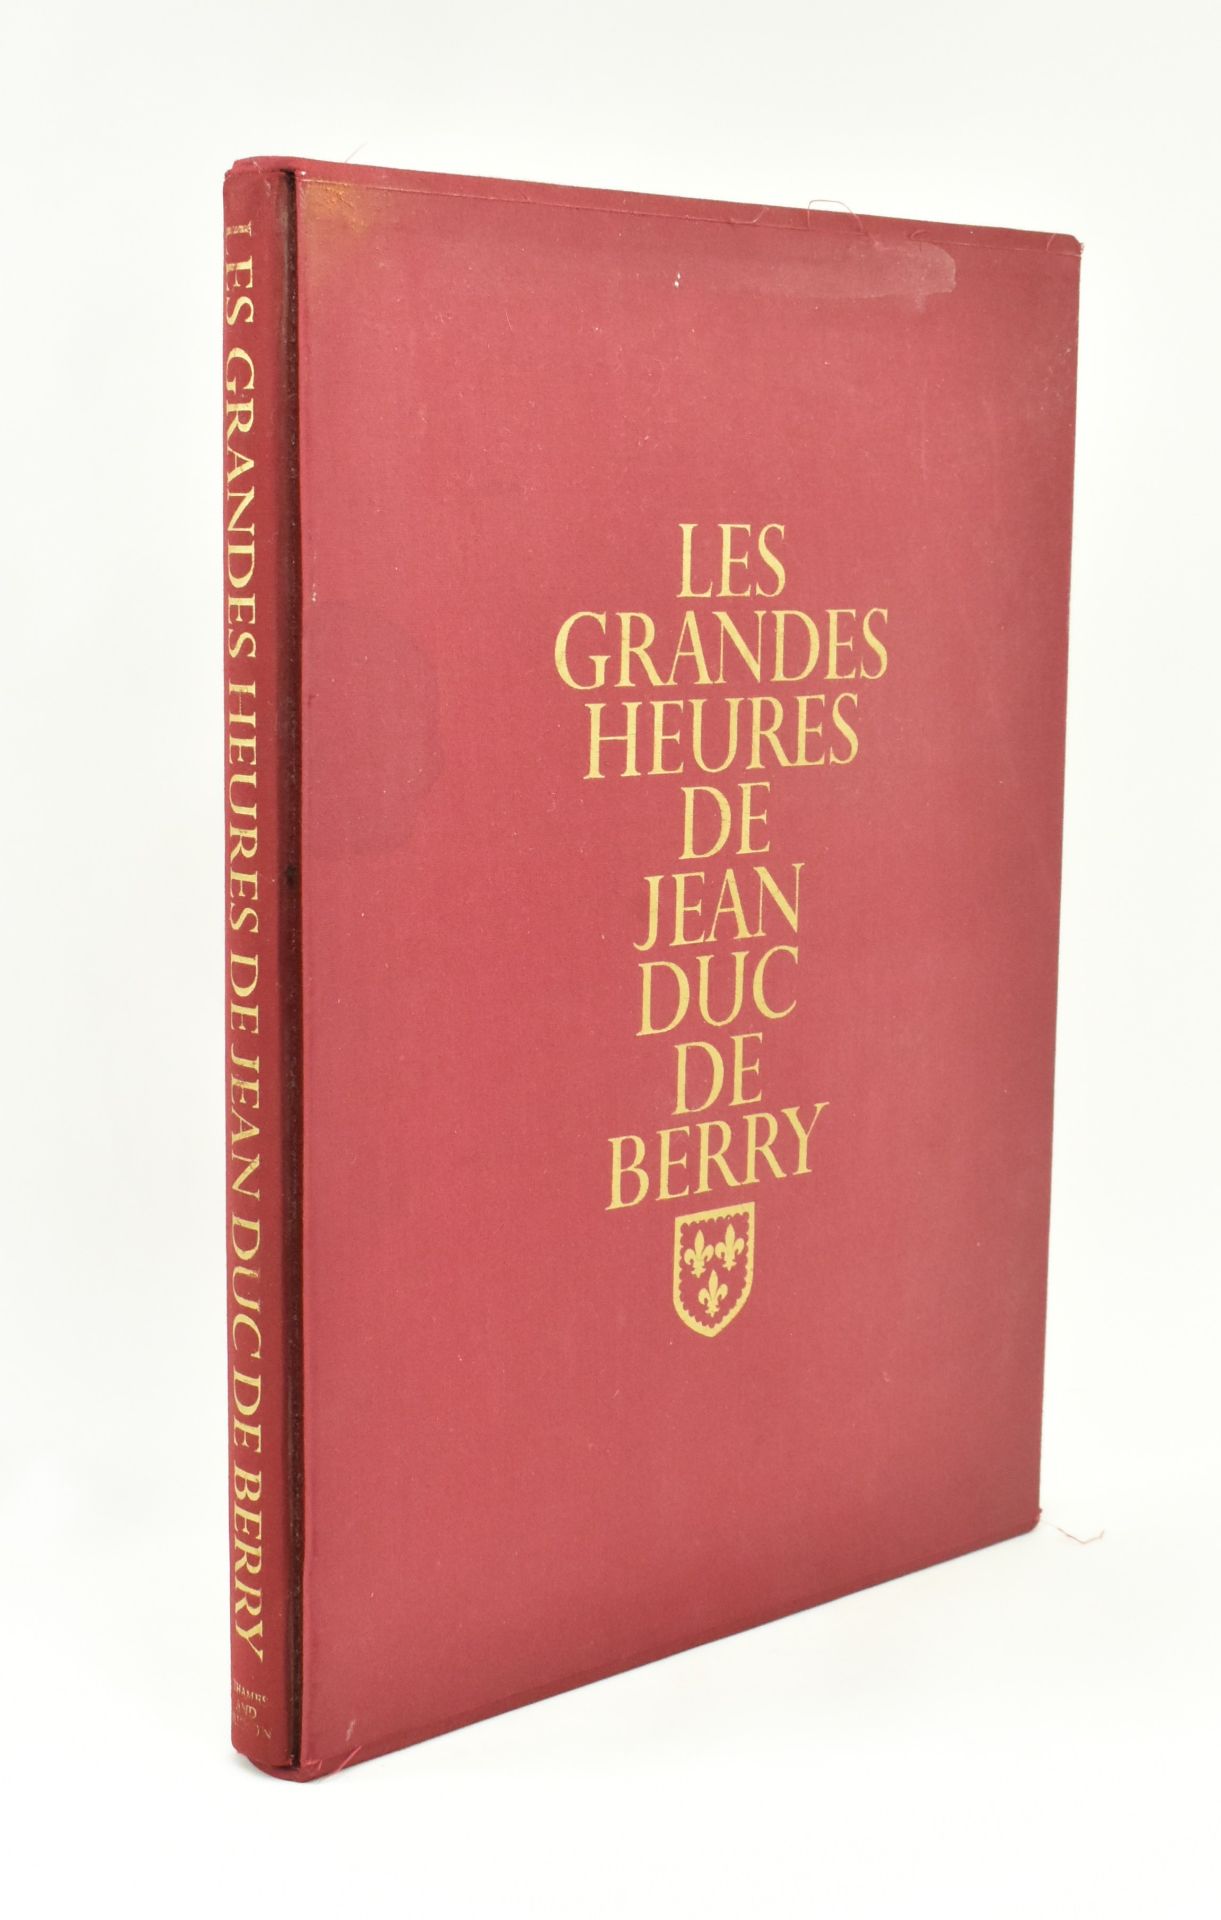 1971 LES GRANDES HEURES DE JEAN DUC DE BERRY IN SLIPCASE